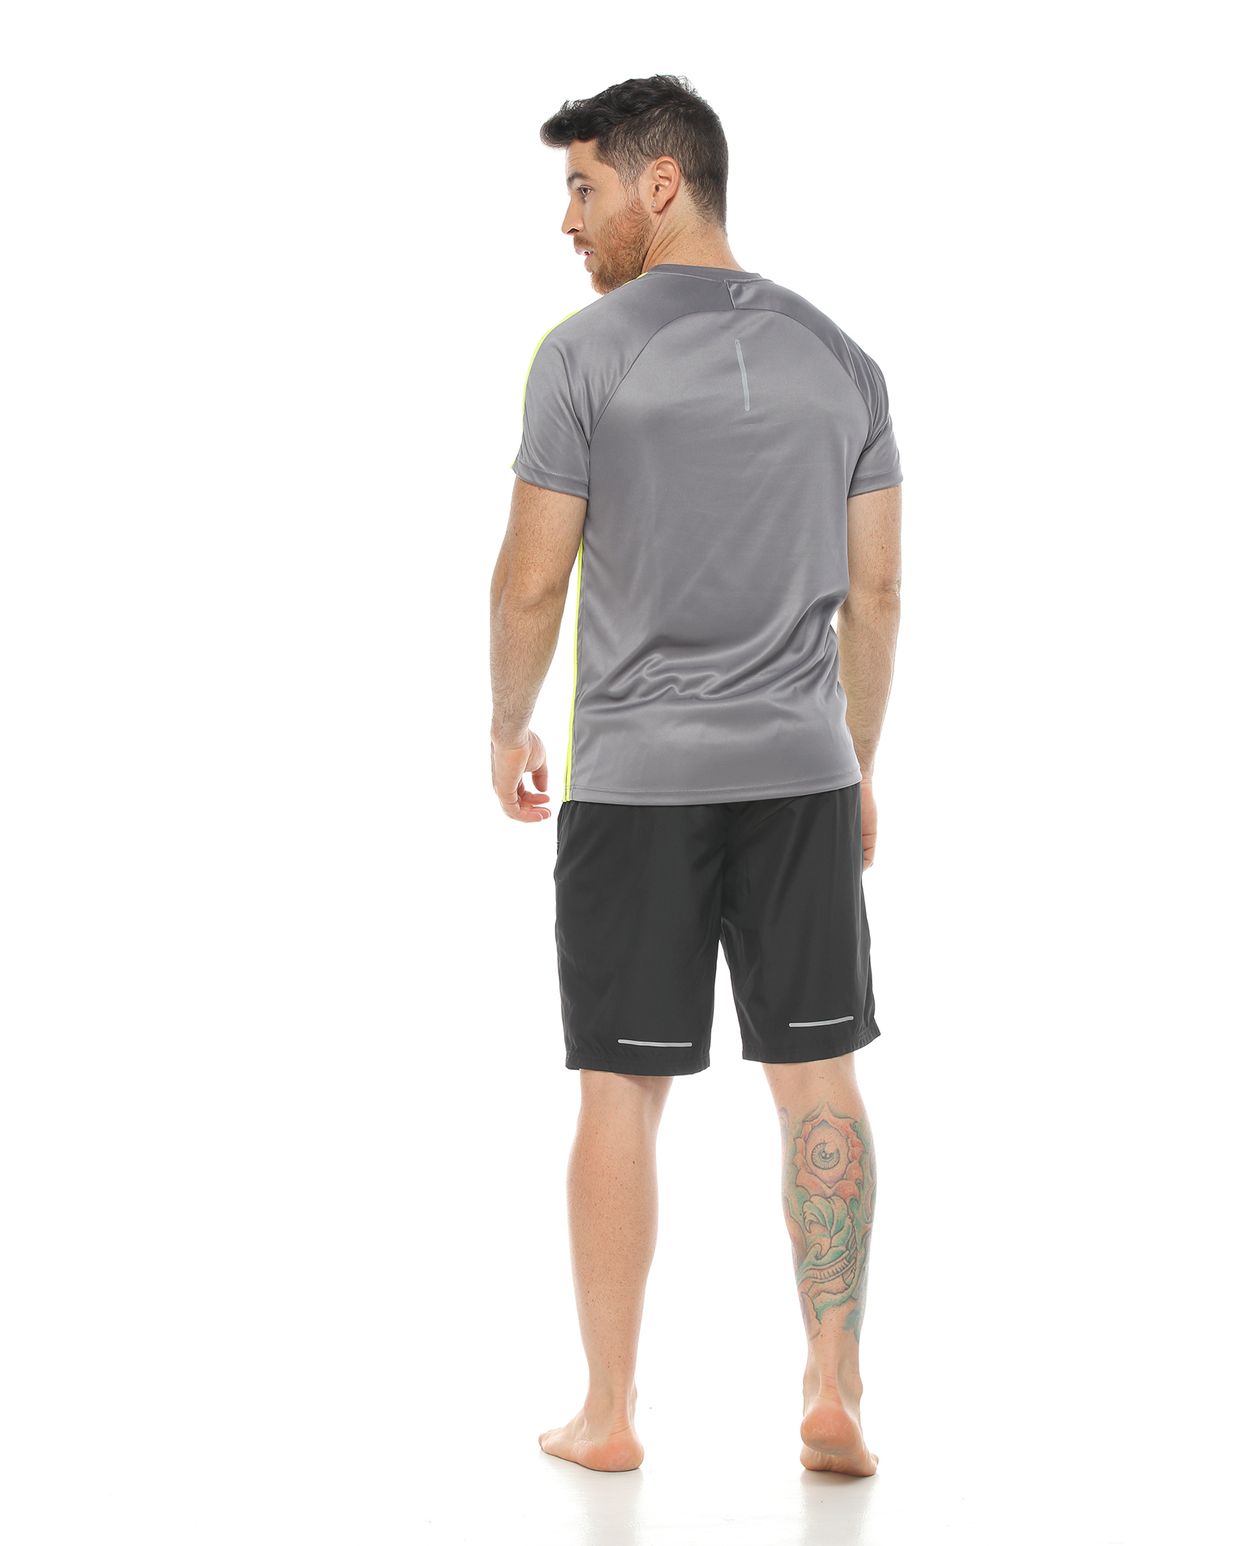 modelo con camiseta deportiva color gris y pantaloneta deportiva color negro para hombre cuerpo completo parte trasera